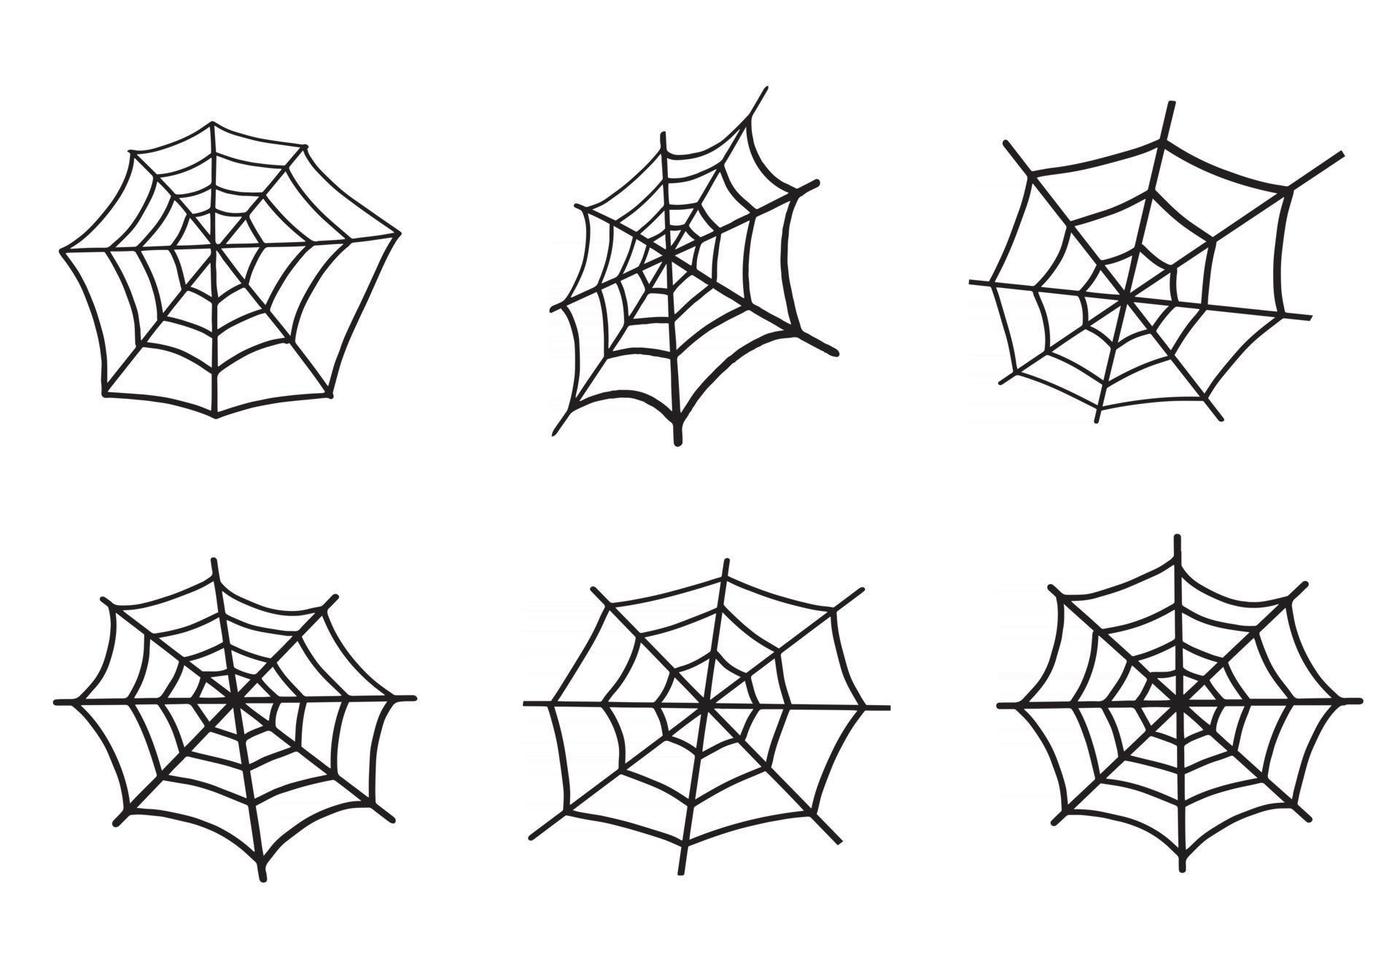 Spider Web set. vector illustration